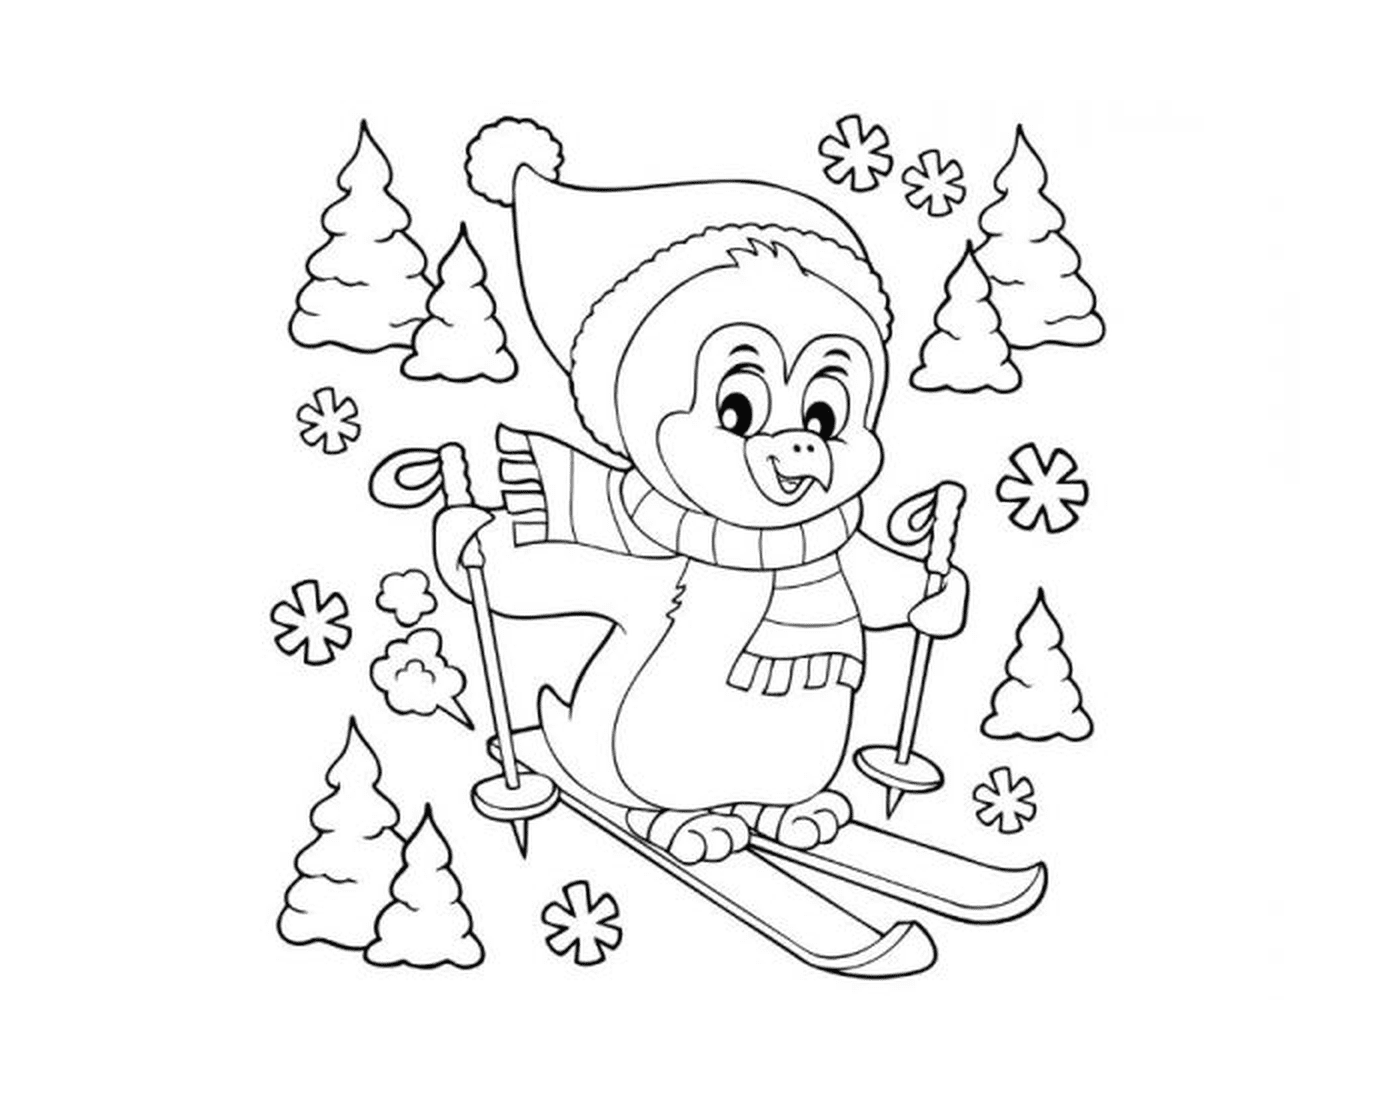  Пингвин катается на лыжах 